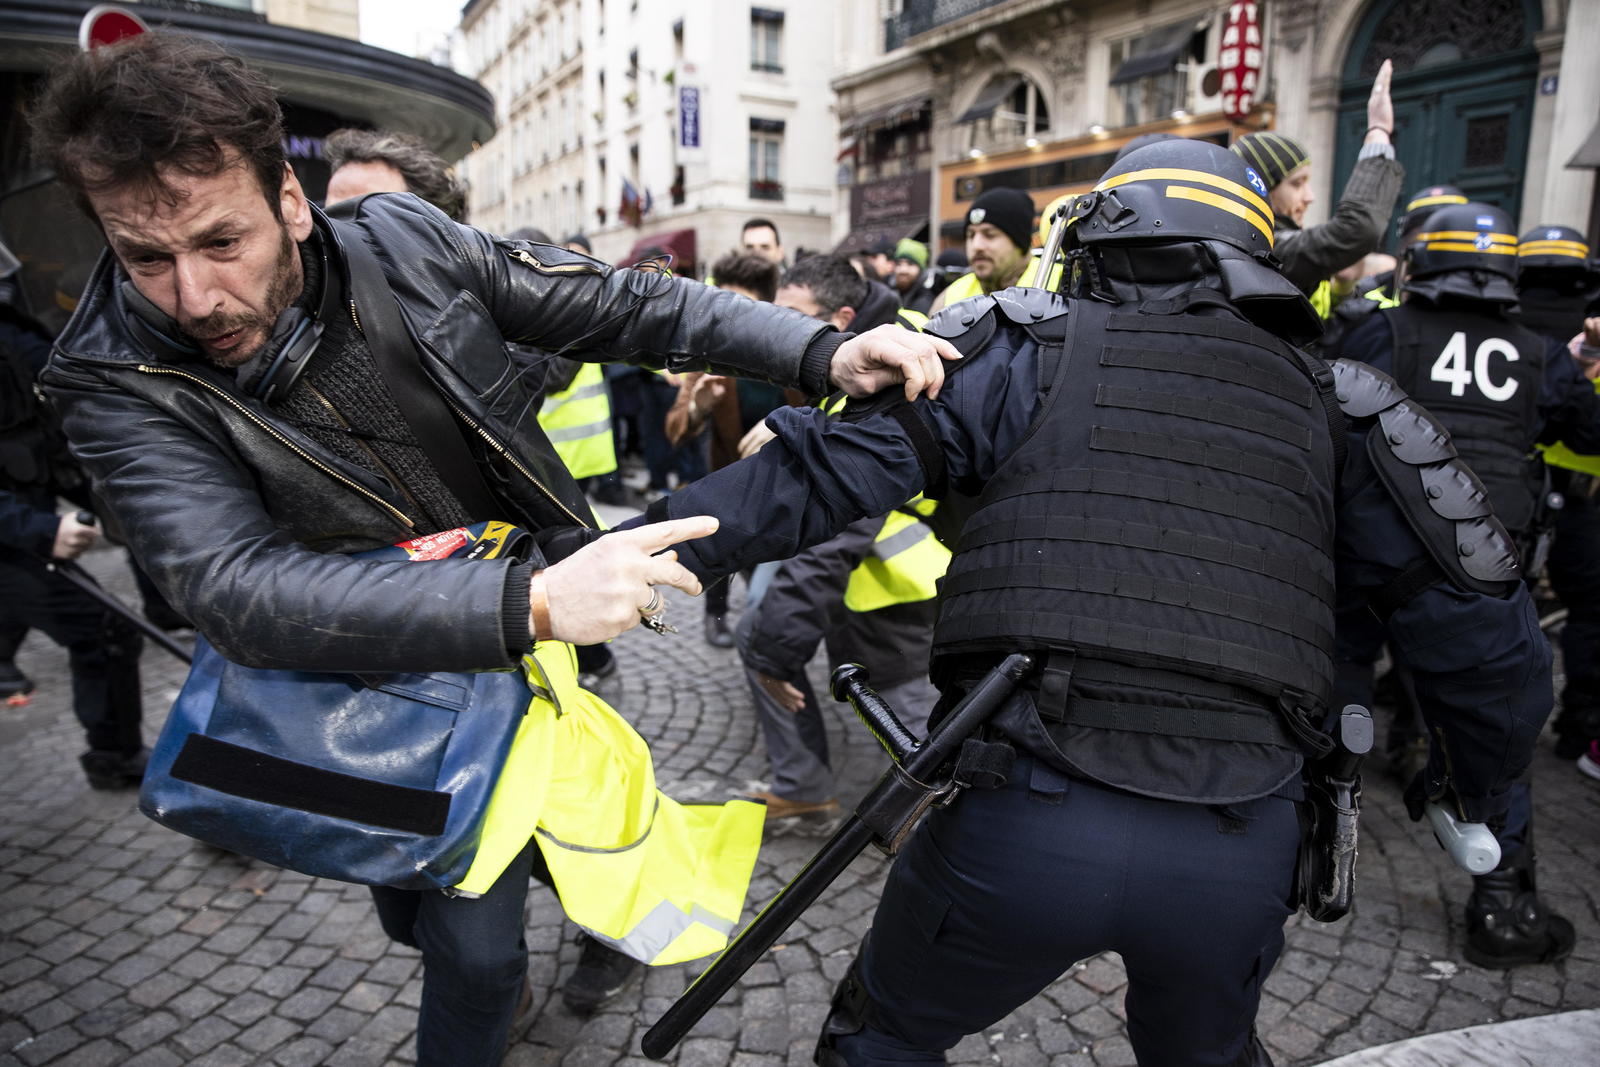 Reacción. Ayer más de mil doscientos granaderos fueron desplegados en la capital francesa.